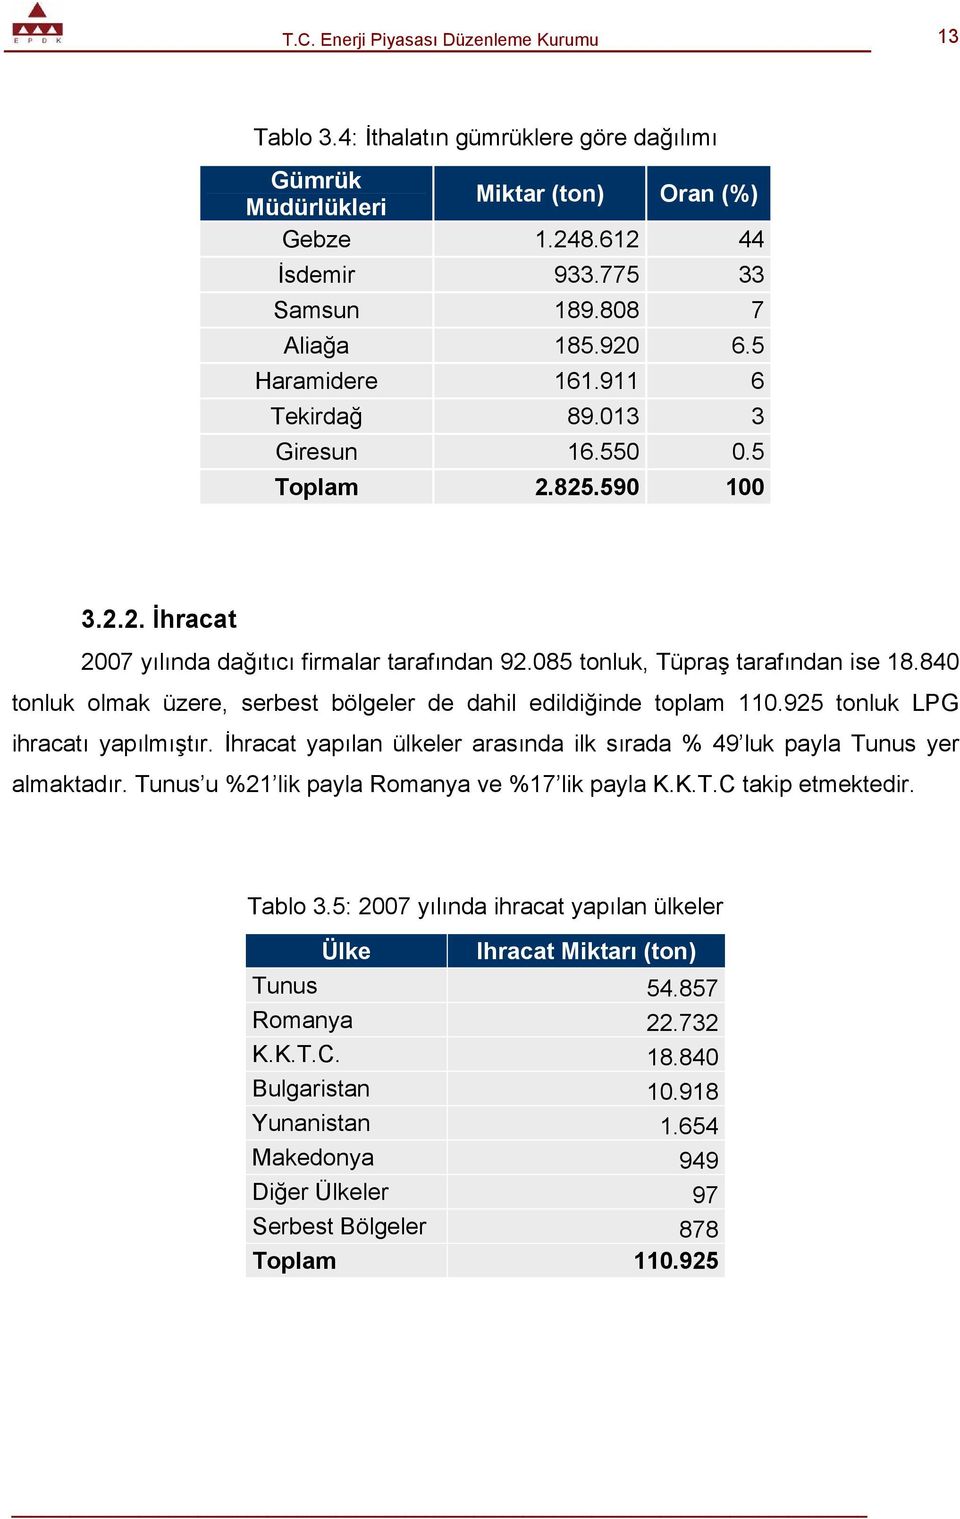 840 tonluk olmak üzere, serbest bölgeler de dahil edildiğinde toplam 110.925 tonluk LPG ihracatı yapılmıştır. İhracat yapılan ülkeler arasında ilk sırada % 49 luk payla Tunus yer almaktadır.